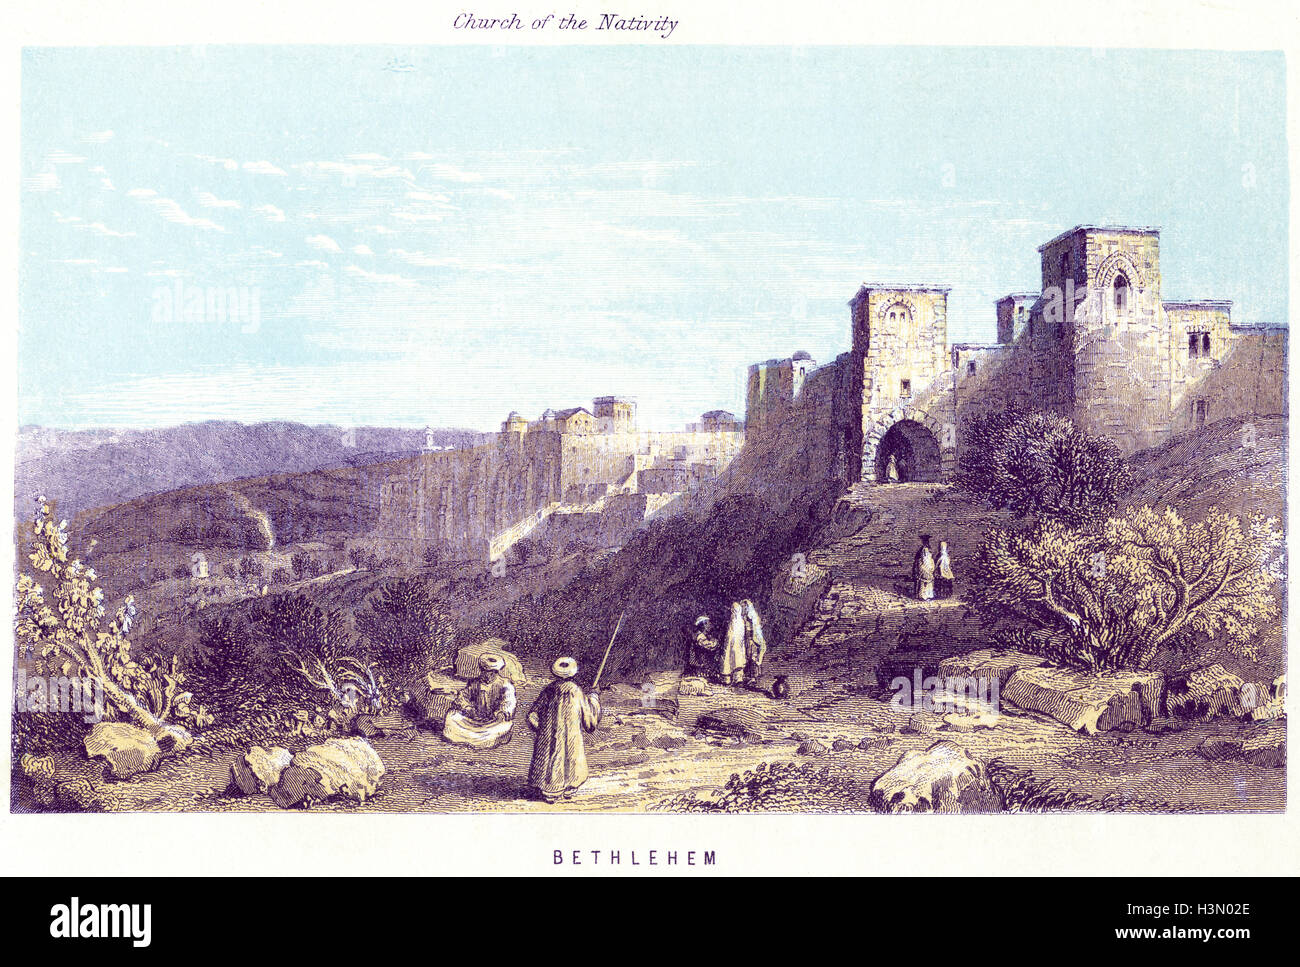 Eine farbige Illustration der Geburtskirche, Bethlehem, die in hoher Auflösung aus einem 1868 gedruckten Buch gescannt wurde. Urheberrechtlich geschützt. Stockfoto